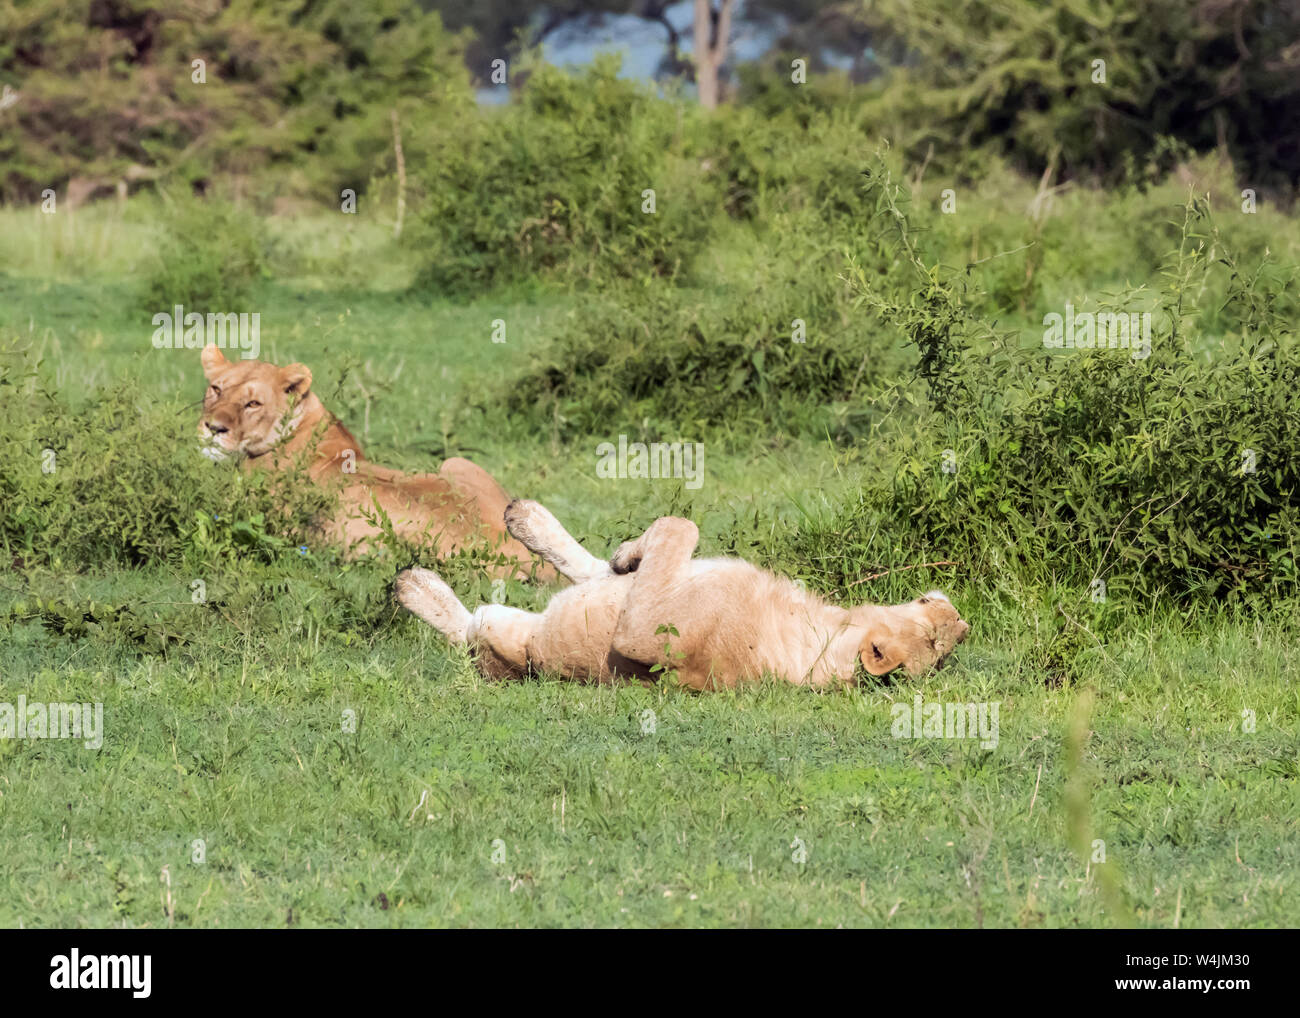 Un lion se détendre pendant que l'autre fait le guet, Grumeti Game Reserve, Serengeti, Tanzanie Banque D'Images